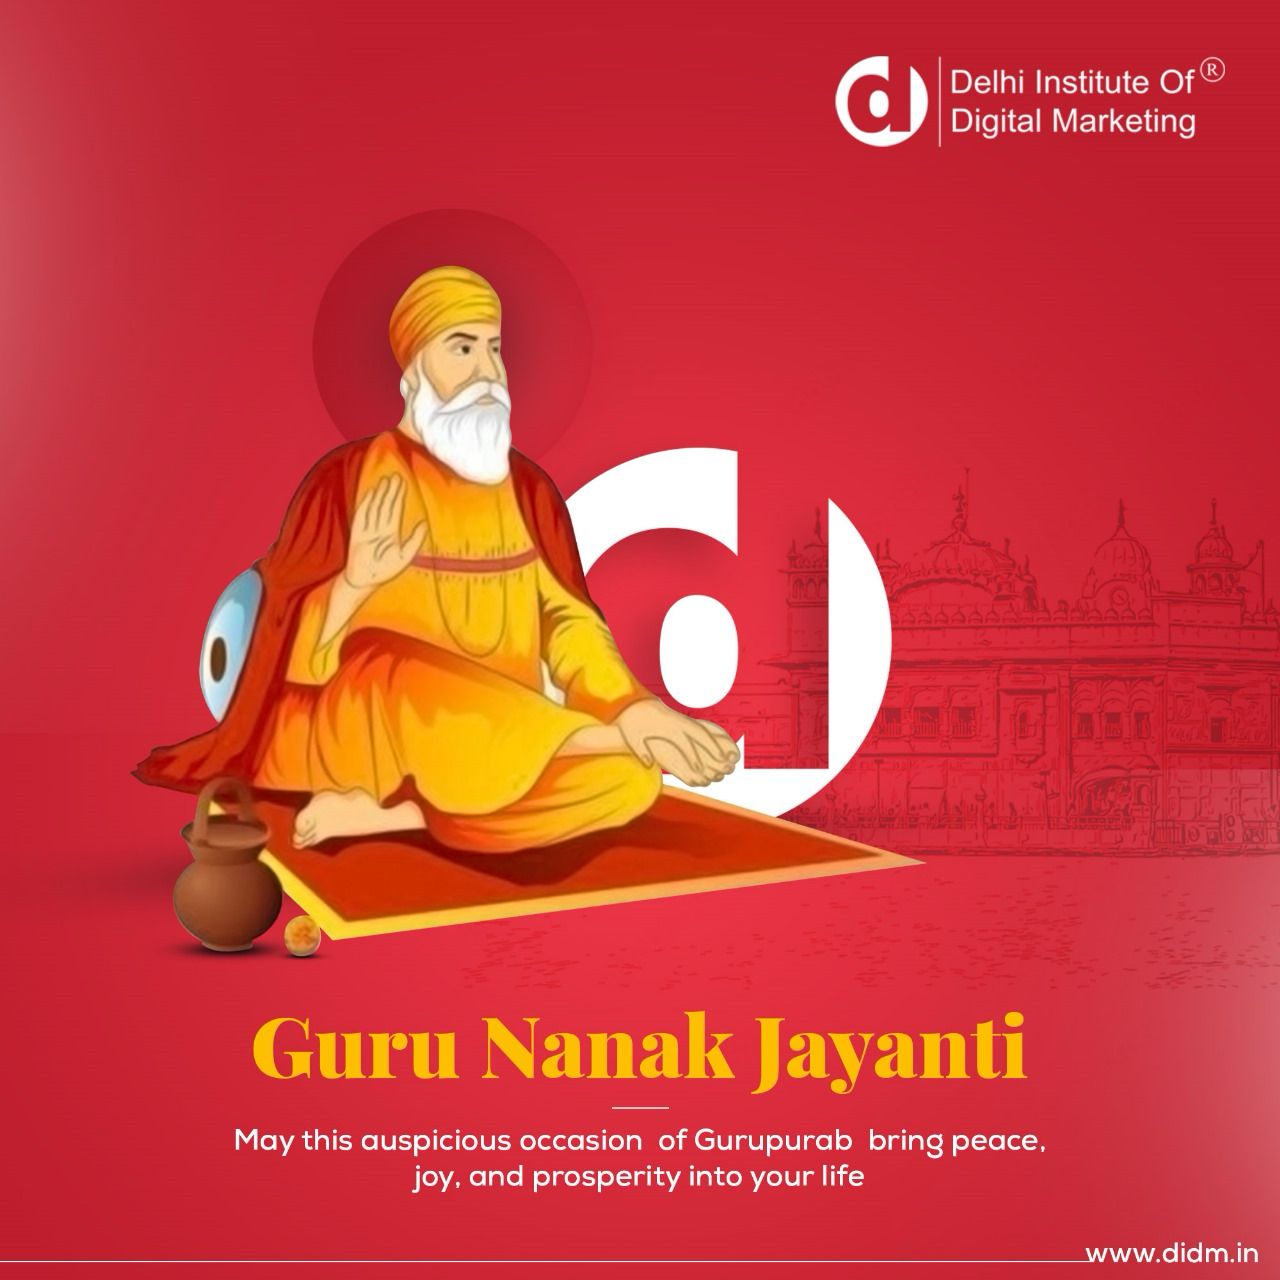 Wishing You a Happy Guru Nanak Jayanti